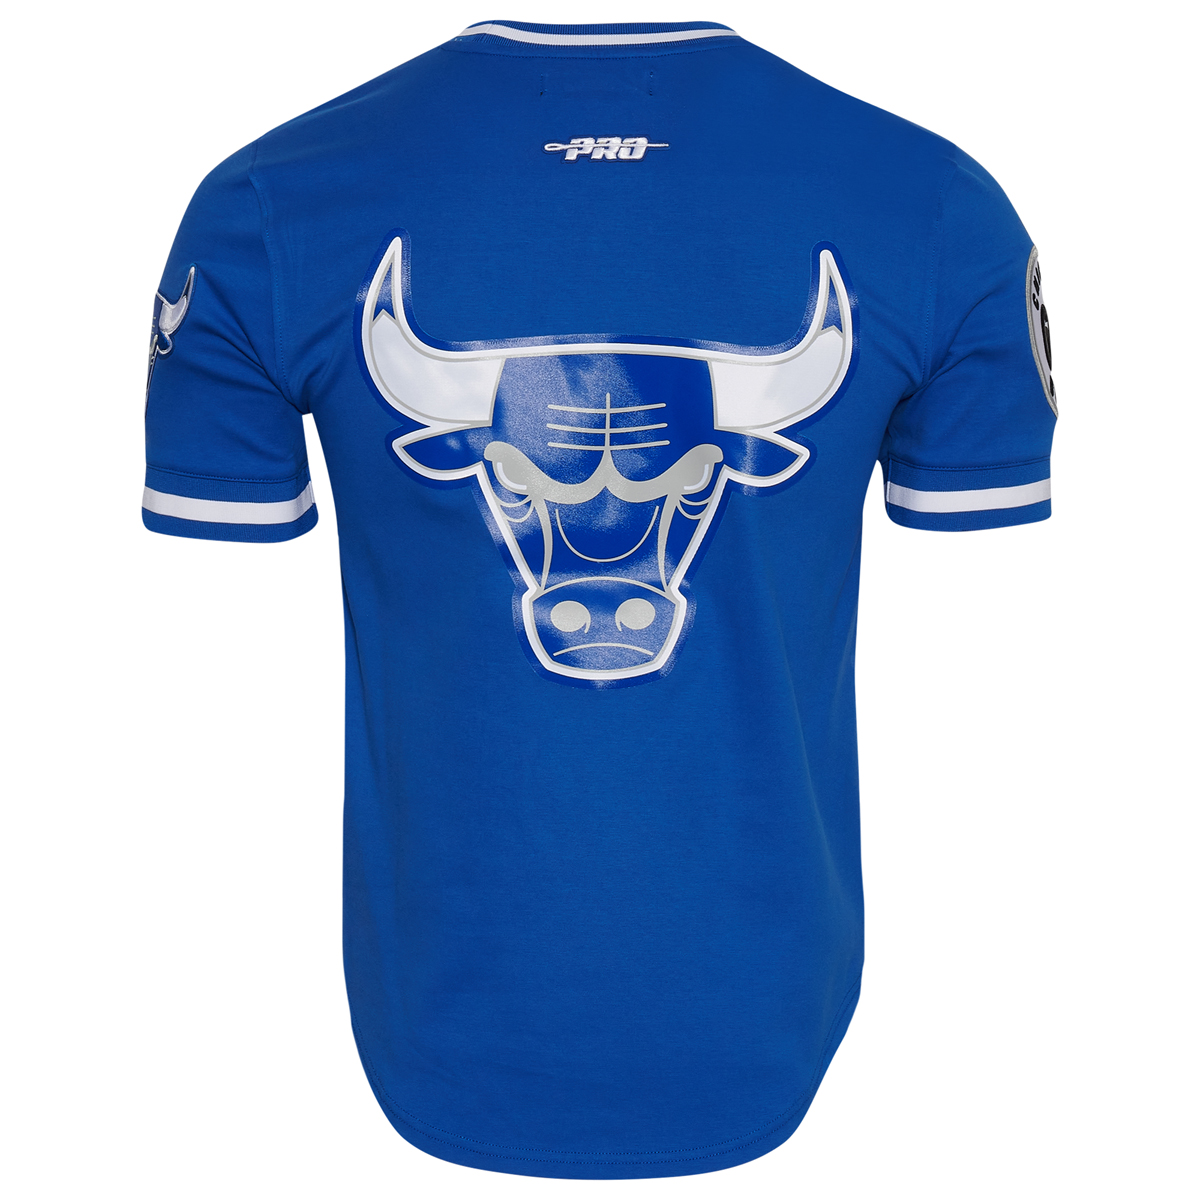 Air-Jordan-1-High-True-Blue-Bulls-Shirt-2